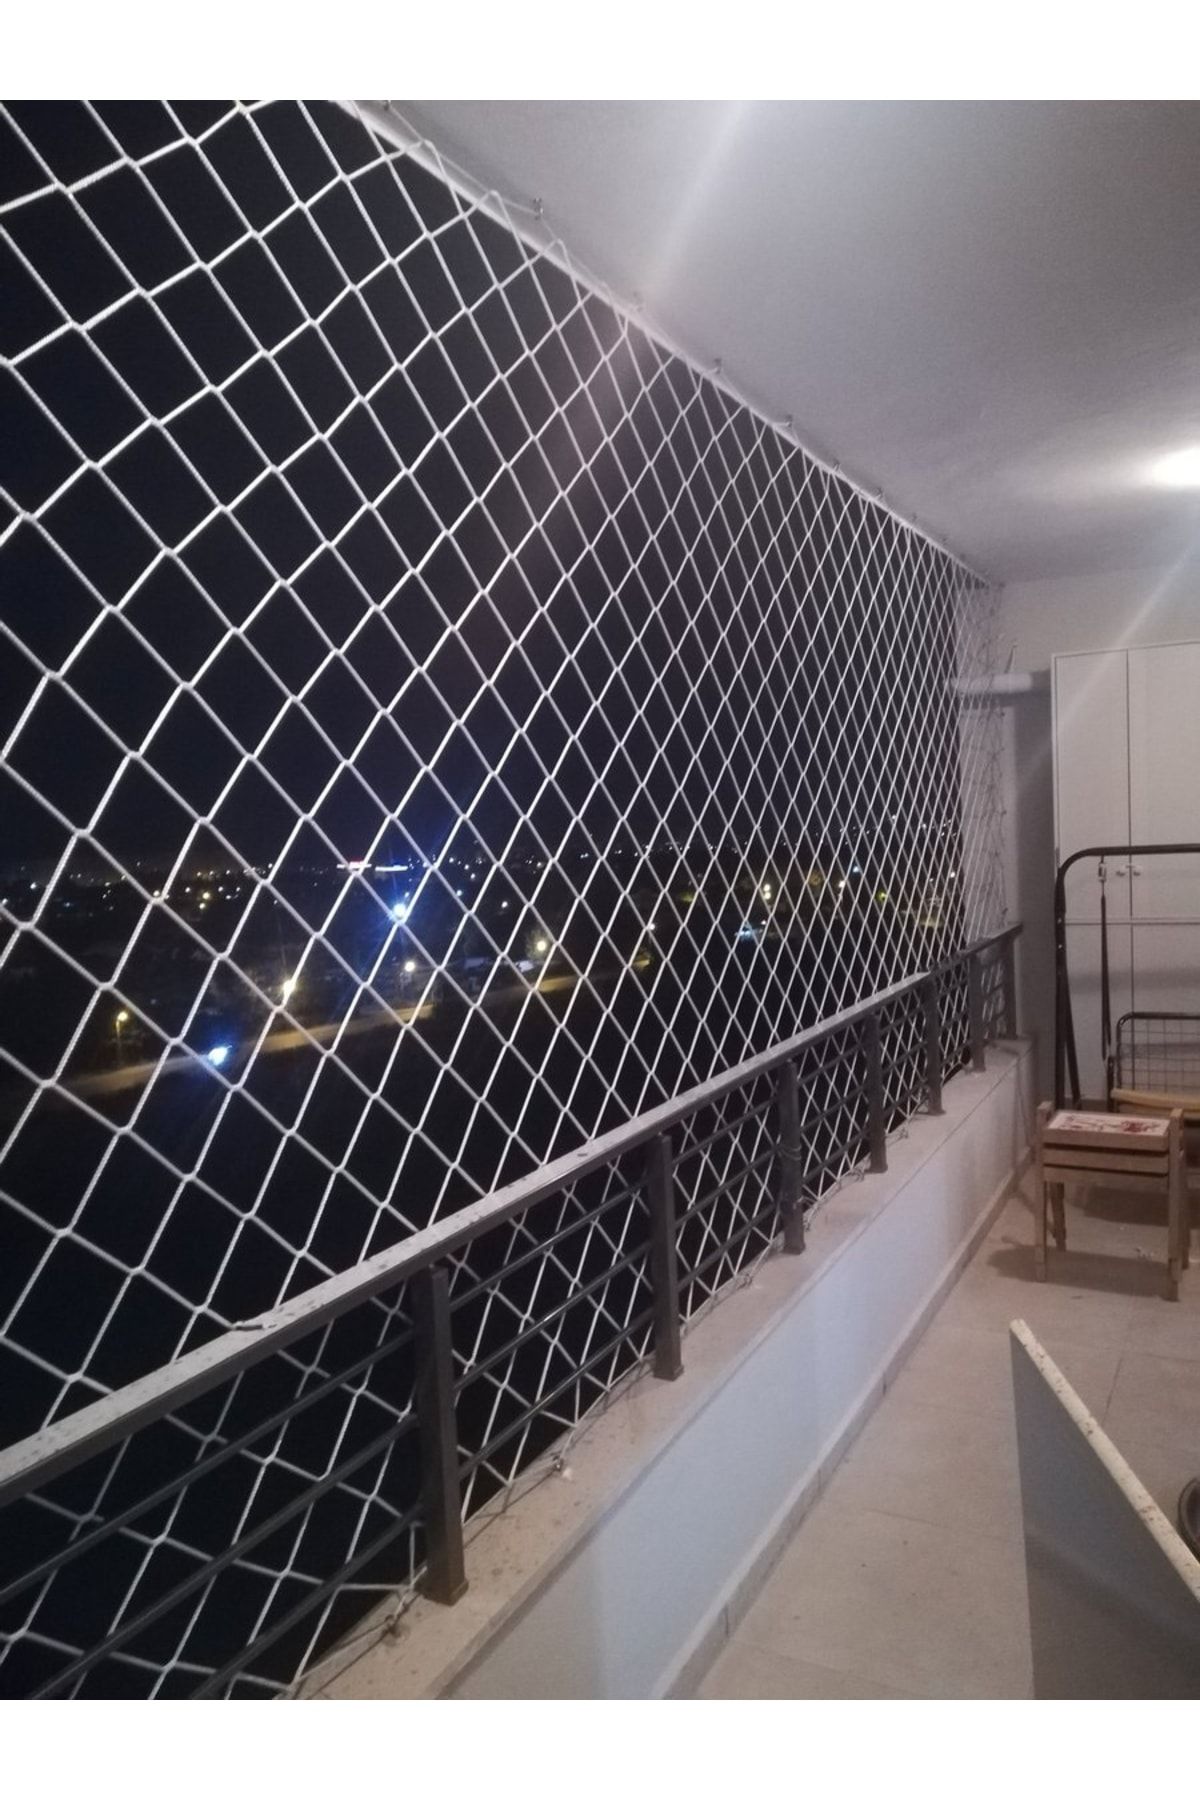 ART Balkon Koruma Ağı Filesi 3x4 Metre Toplam 12m2 Bahçe Kedi Kuş Önleme Güvenlik